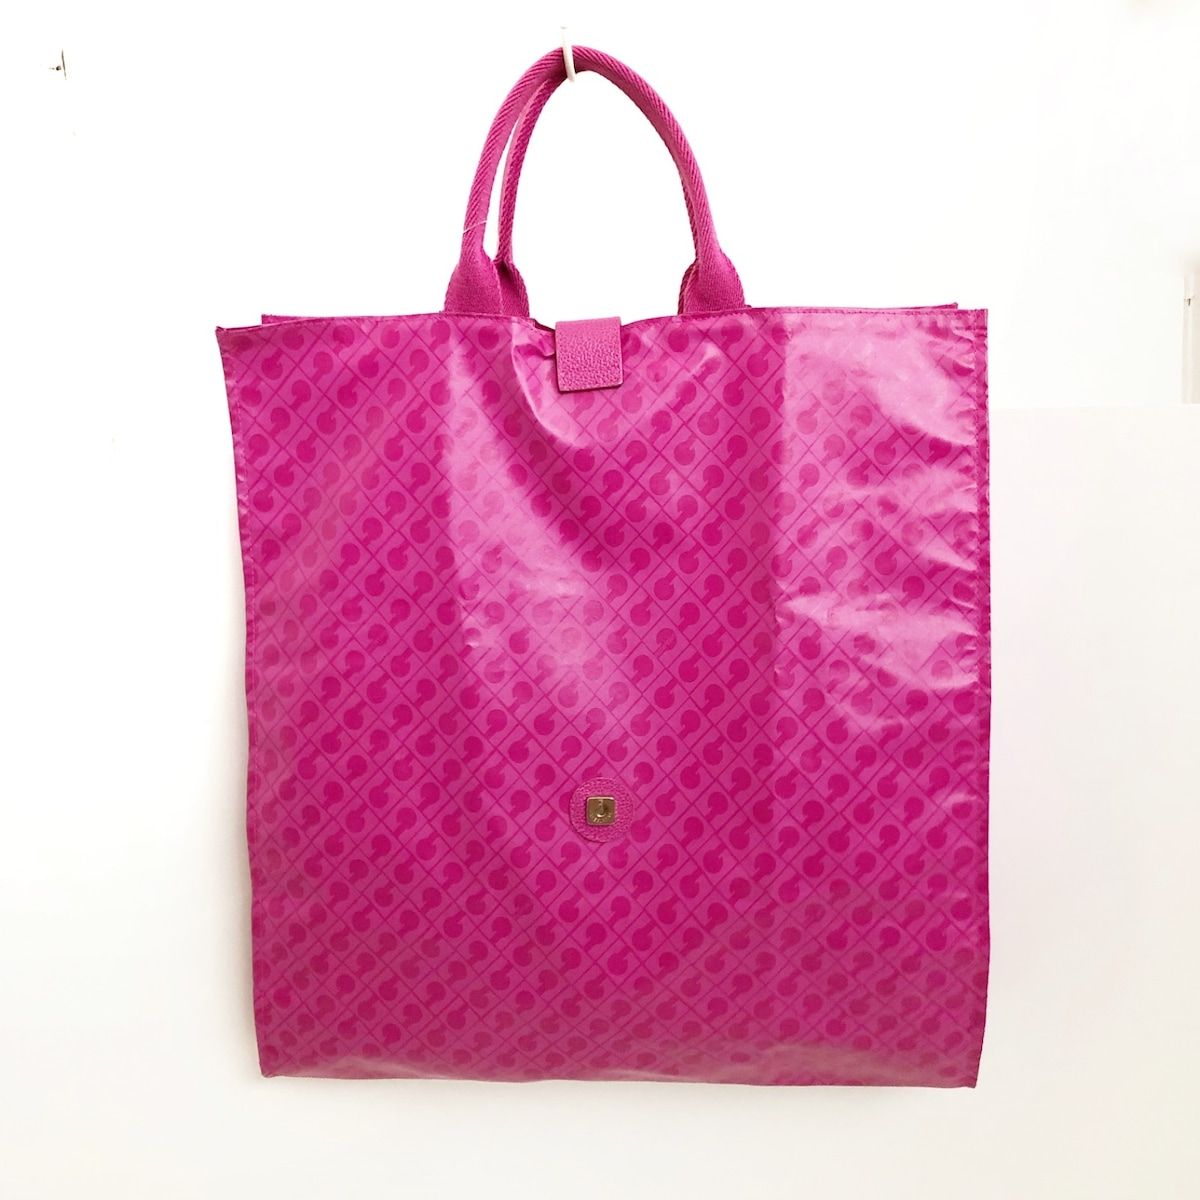 GHERARDINI(ゲラルディーニ) トートバッグ - ピンク 折りたたみ PVC(塩化ビニール)×キャンバス